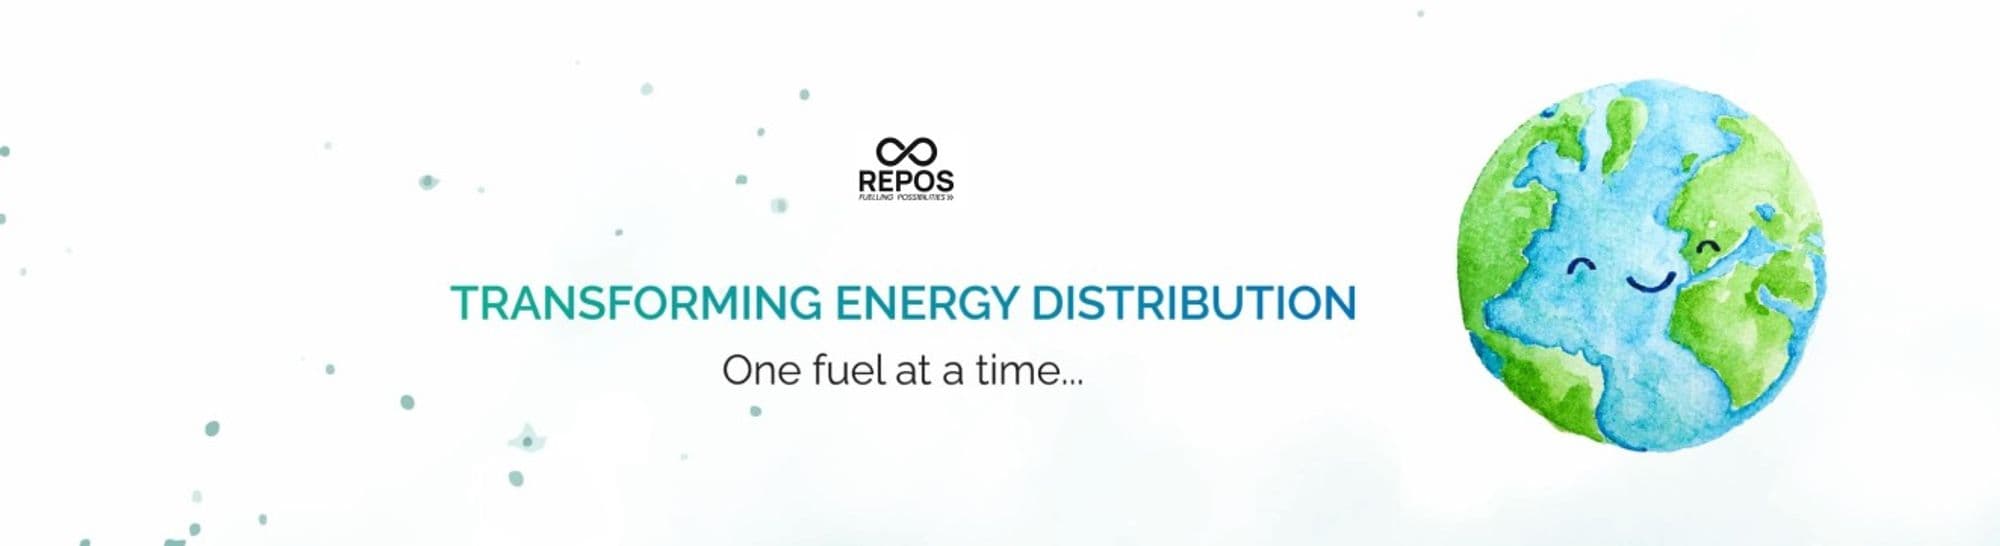 Repos Energy Cover Image